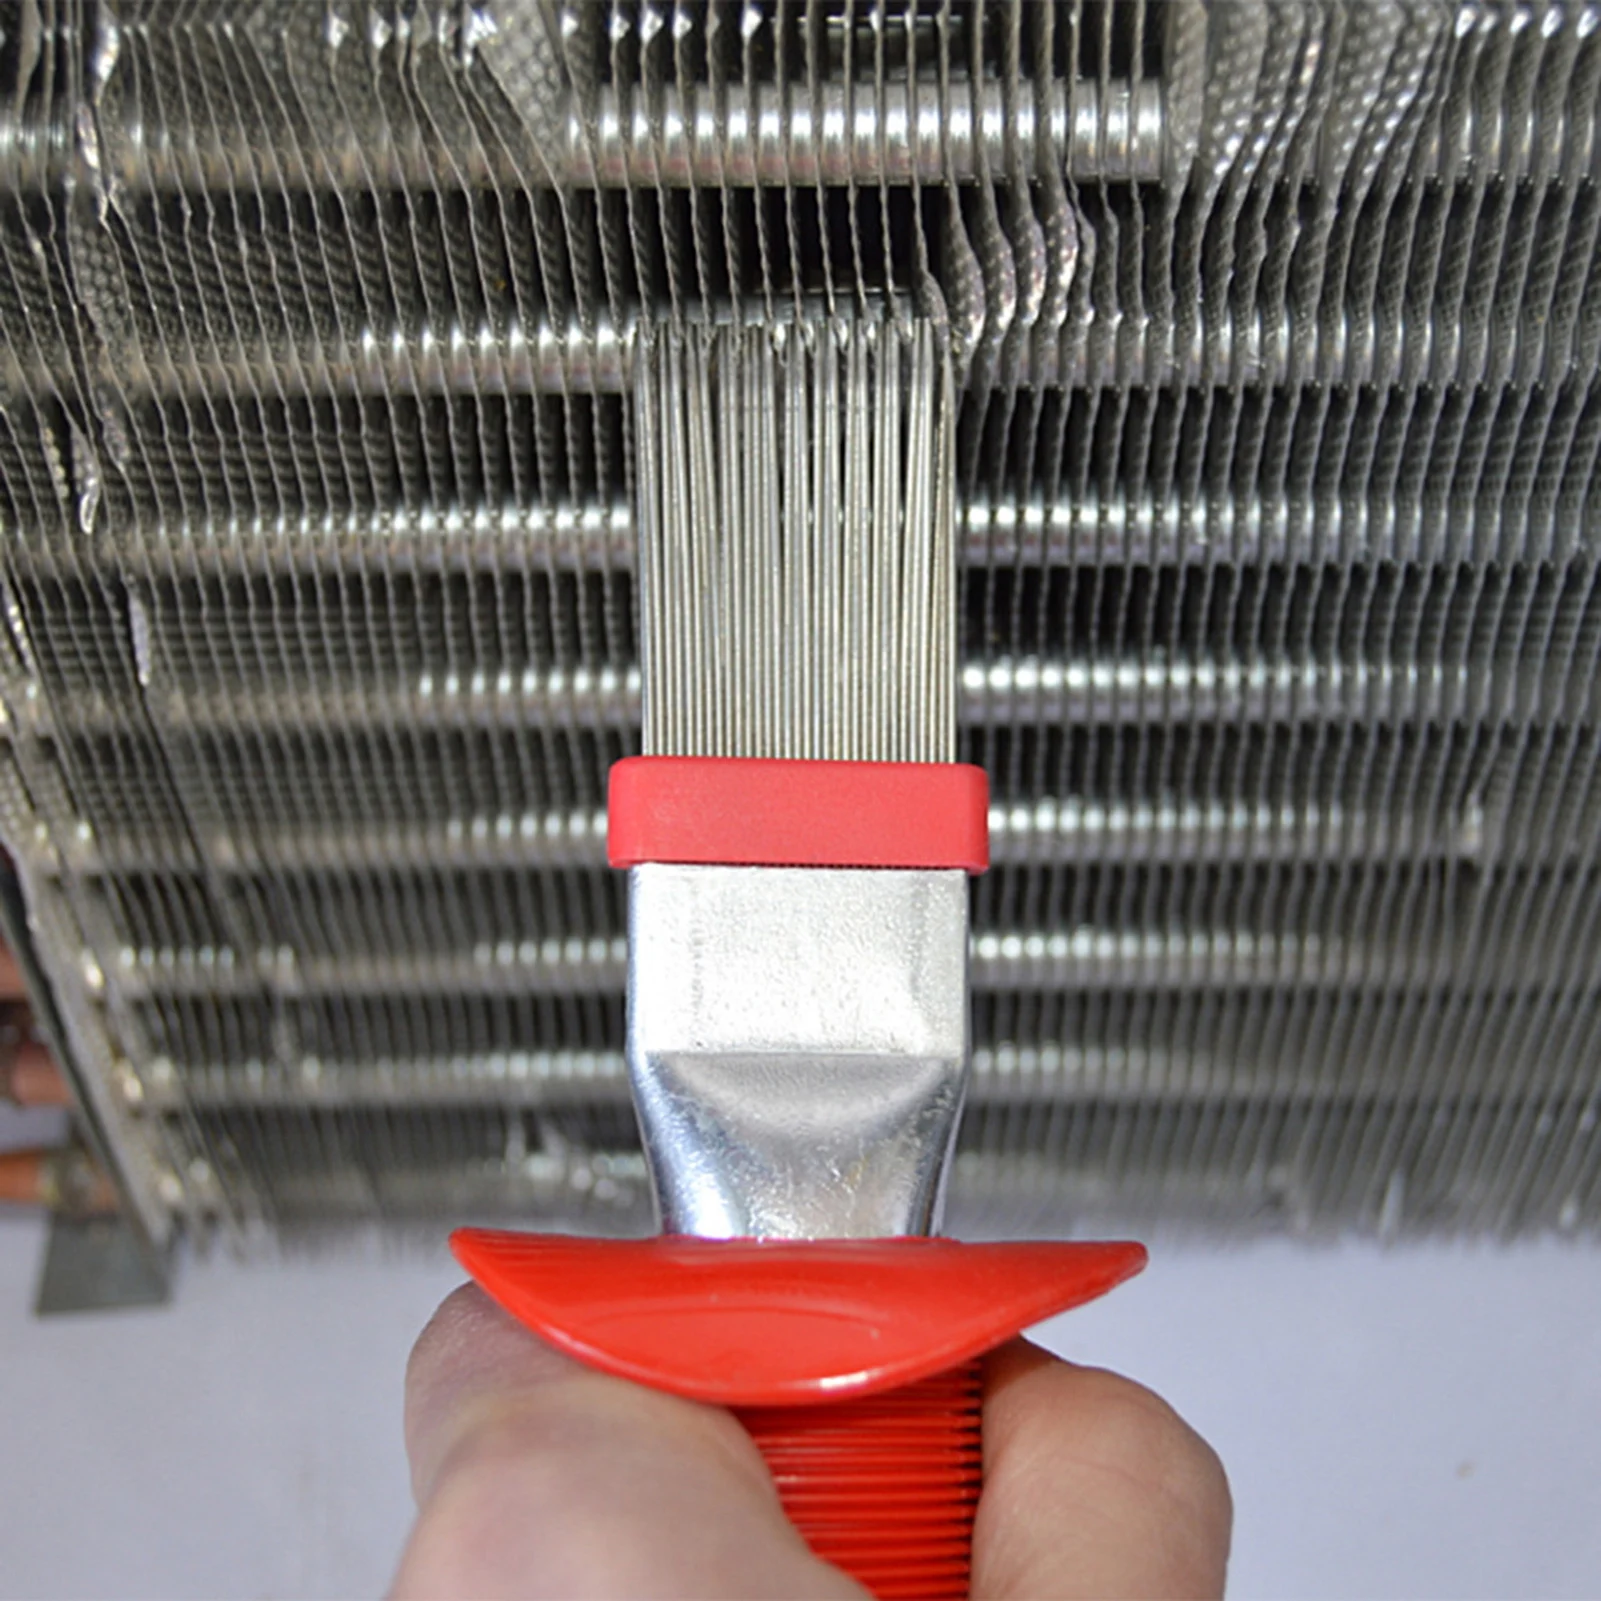 Air Conditioner Fin Repair Tool Comb A/C HVAC Condenser Radiator Universal 